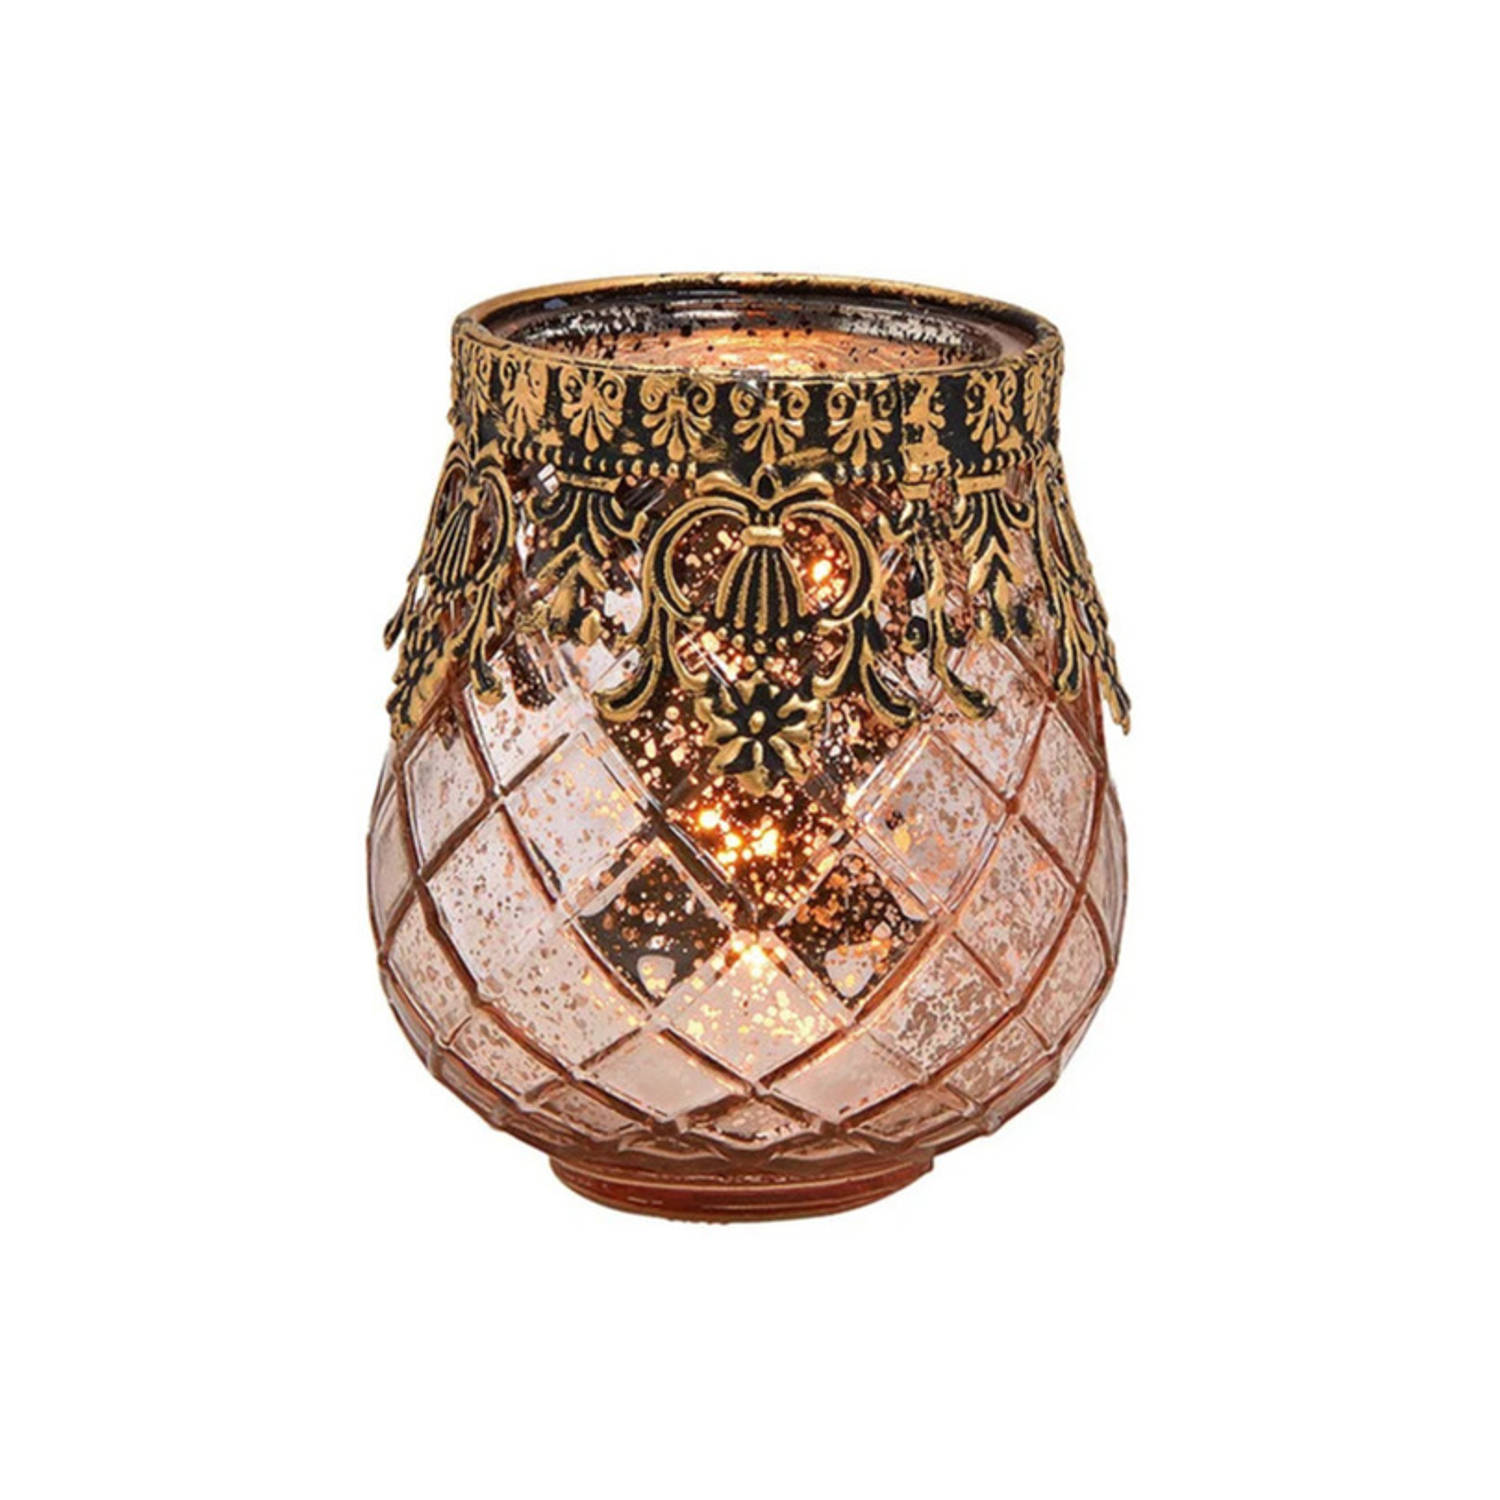 Glazen Design Windlicht-kaarsenhouder In De Kleur Rose Goud Met Formaat 9 X 10 X 9 Cm. Voor Waxineli